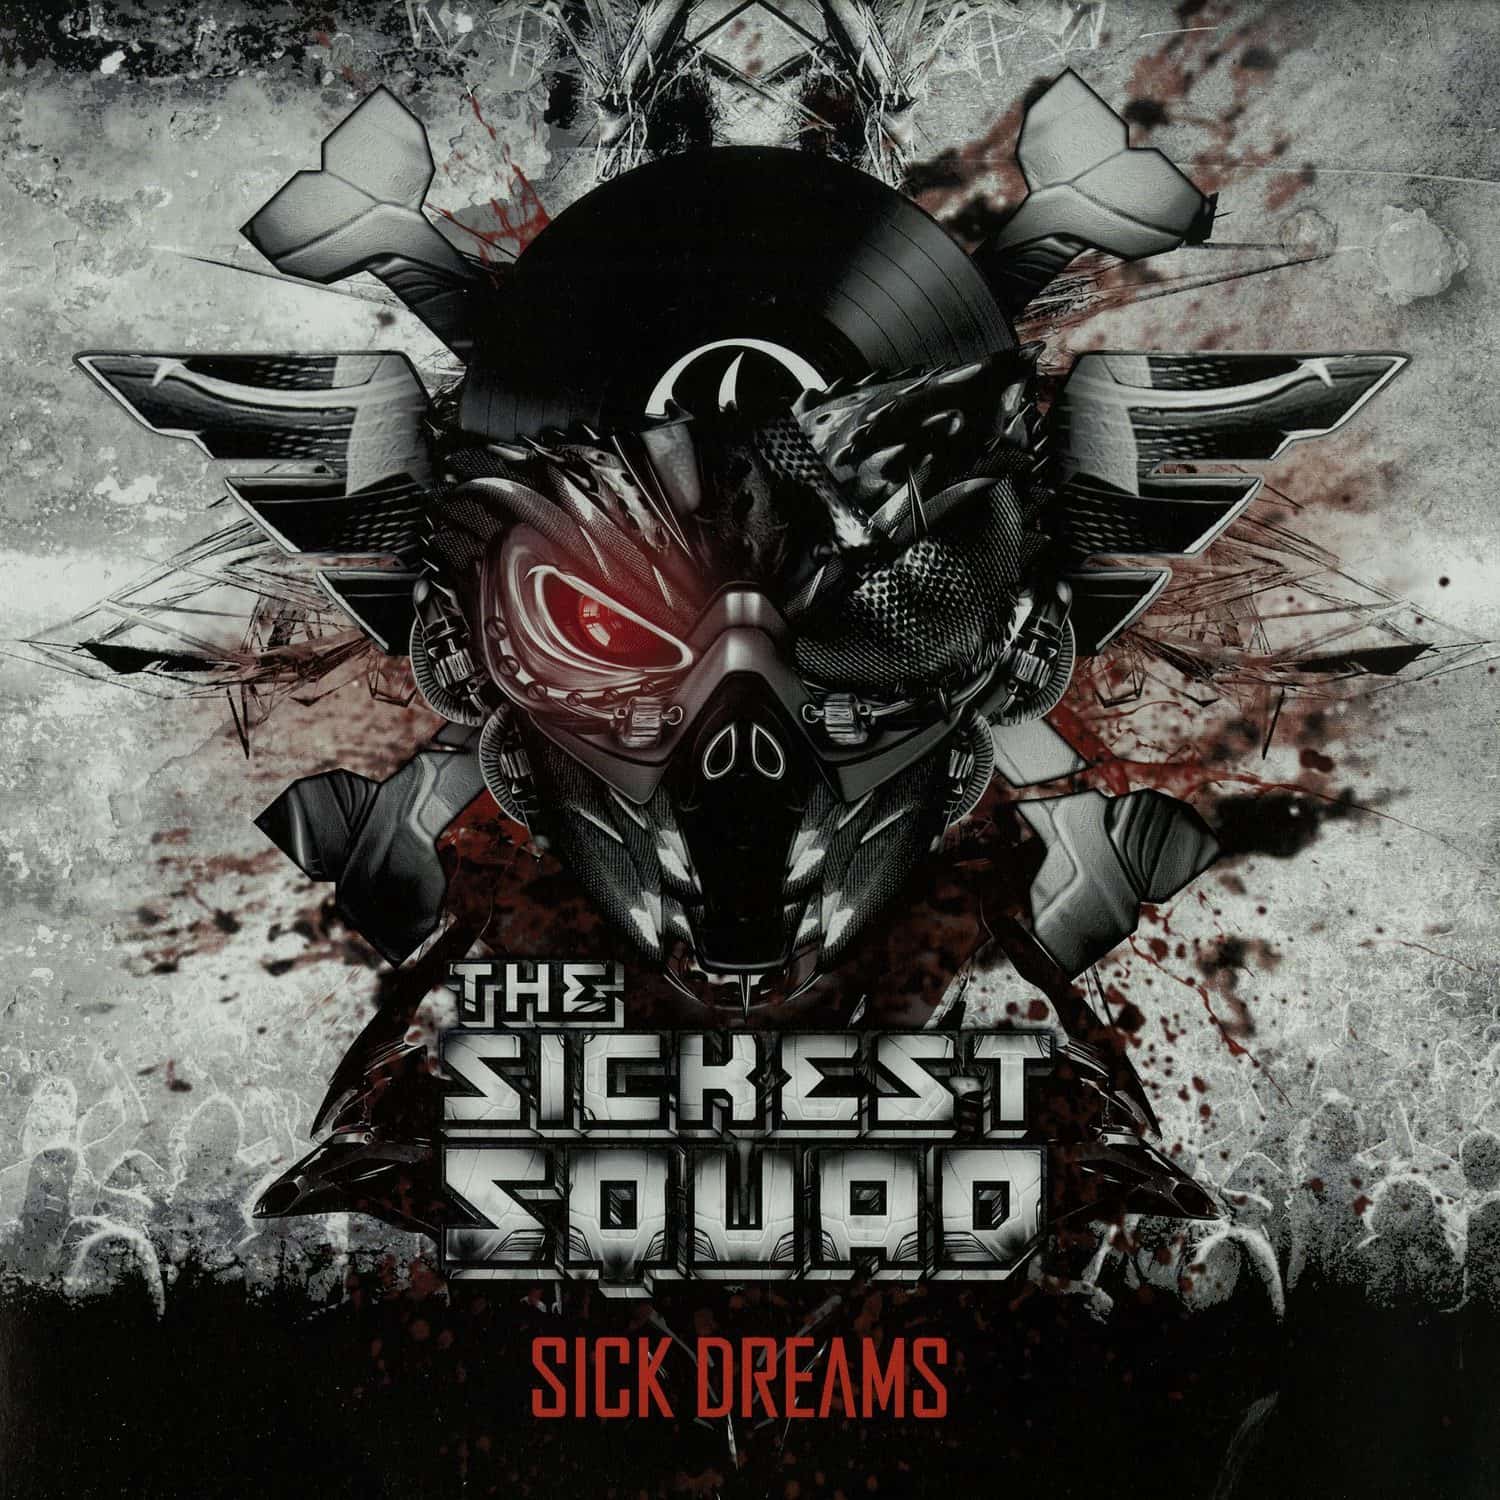 The Sickest Squad - SICK DREAMS